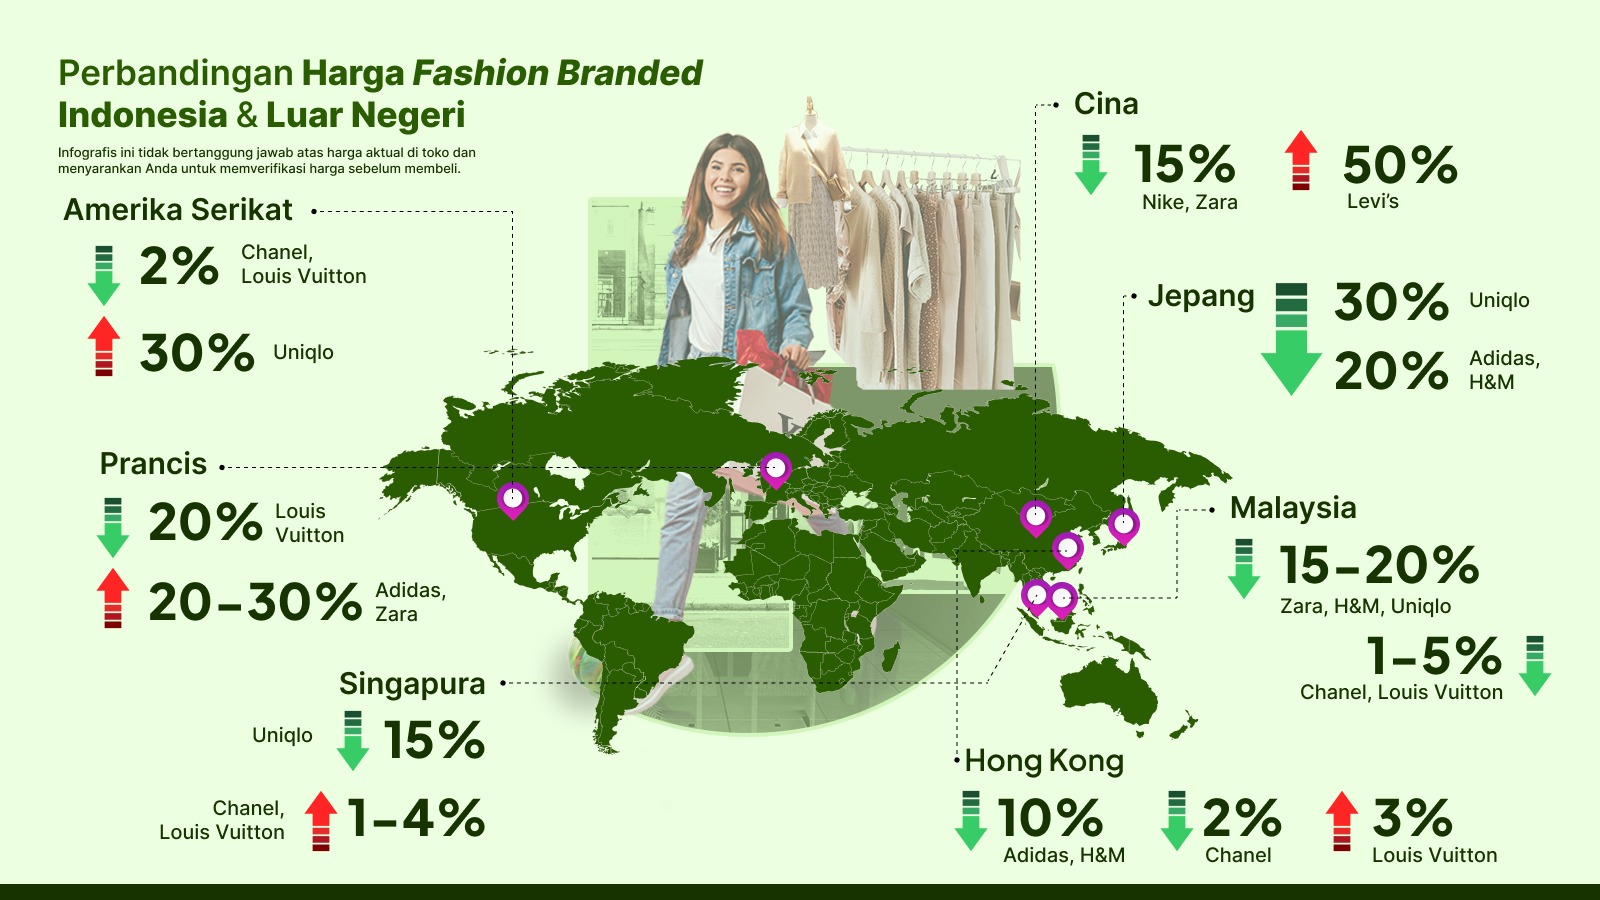 Perbandingan Harga Fashion Branded di Indonesia dan Luar Negeri. (Sumber: Riset WISE)